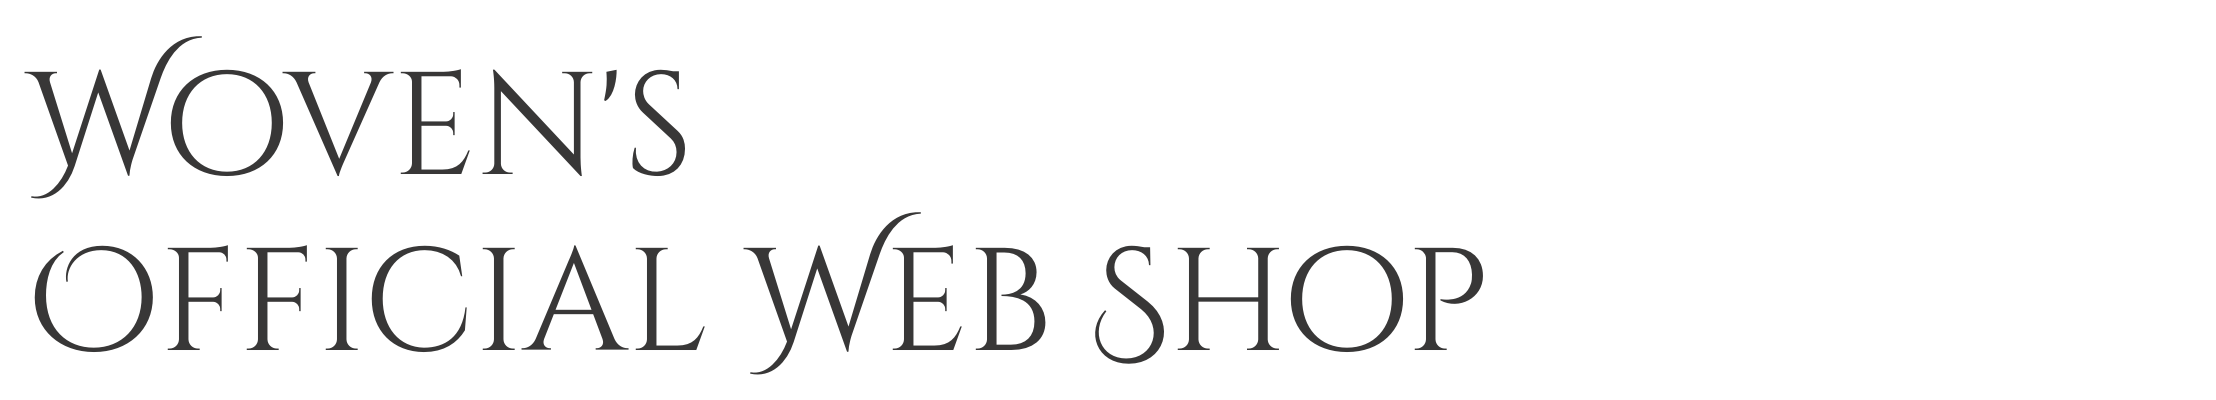 Woven's Official Web Shop